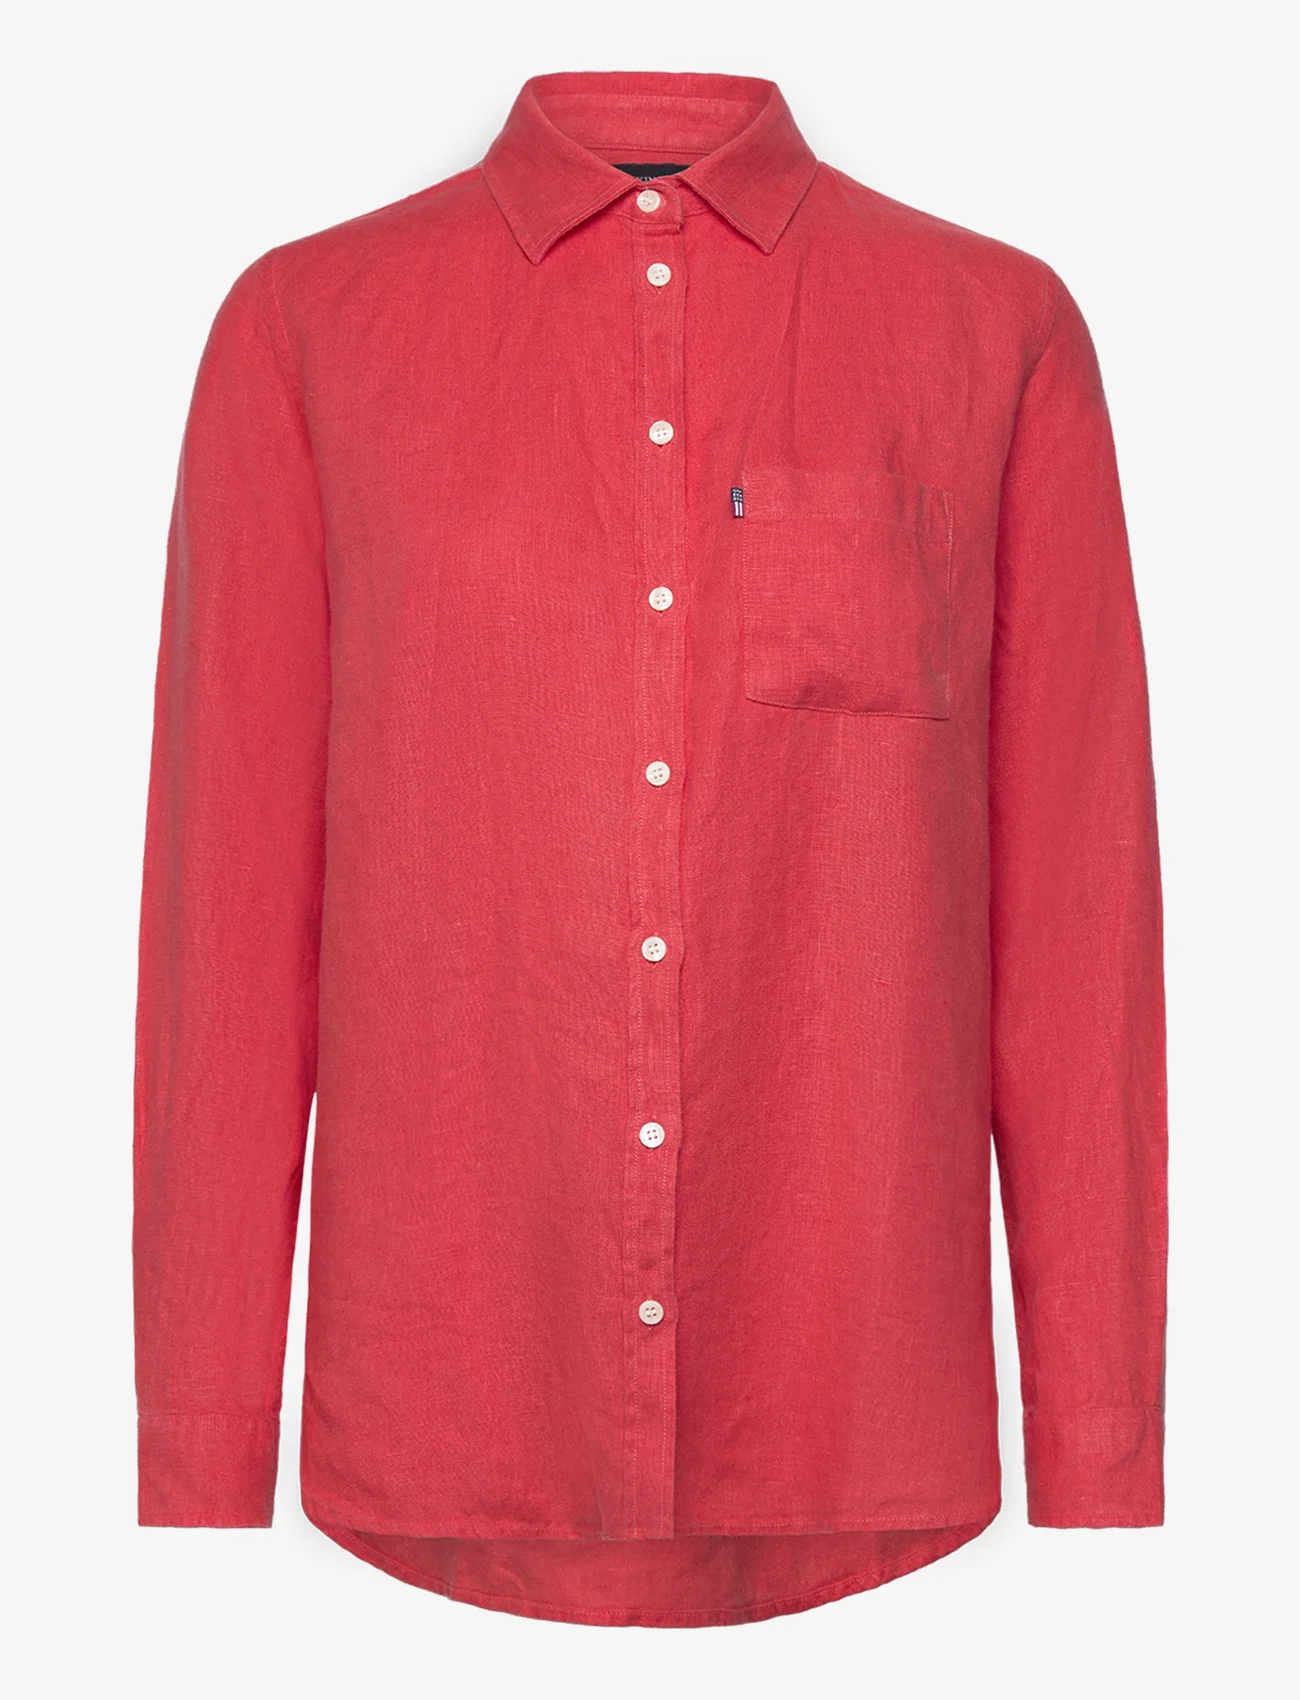 Lexington Clothing - Isa Linen Shirt - langærmede skjorter - red - 0